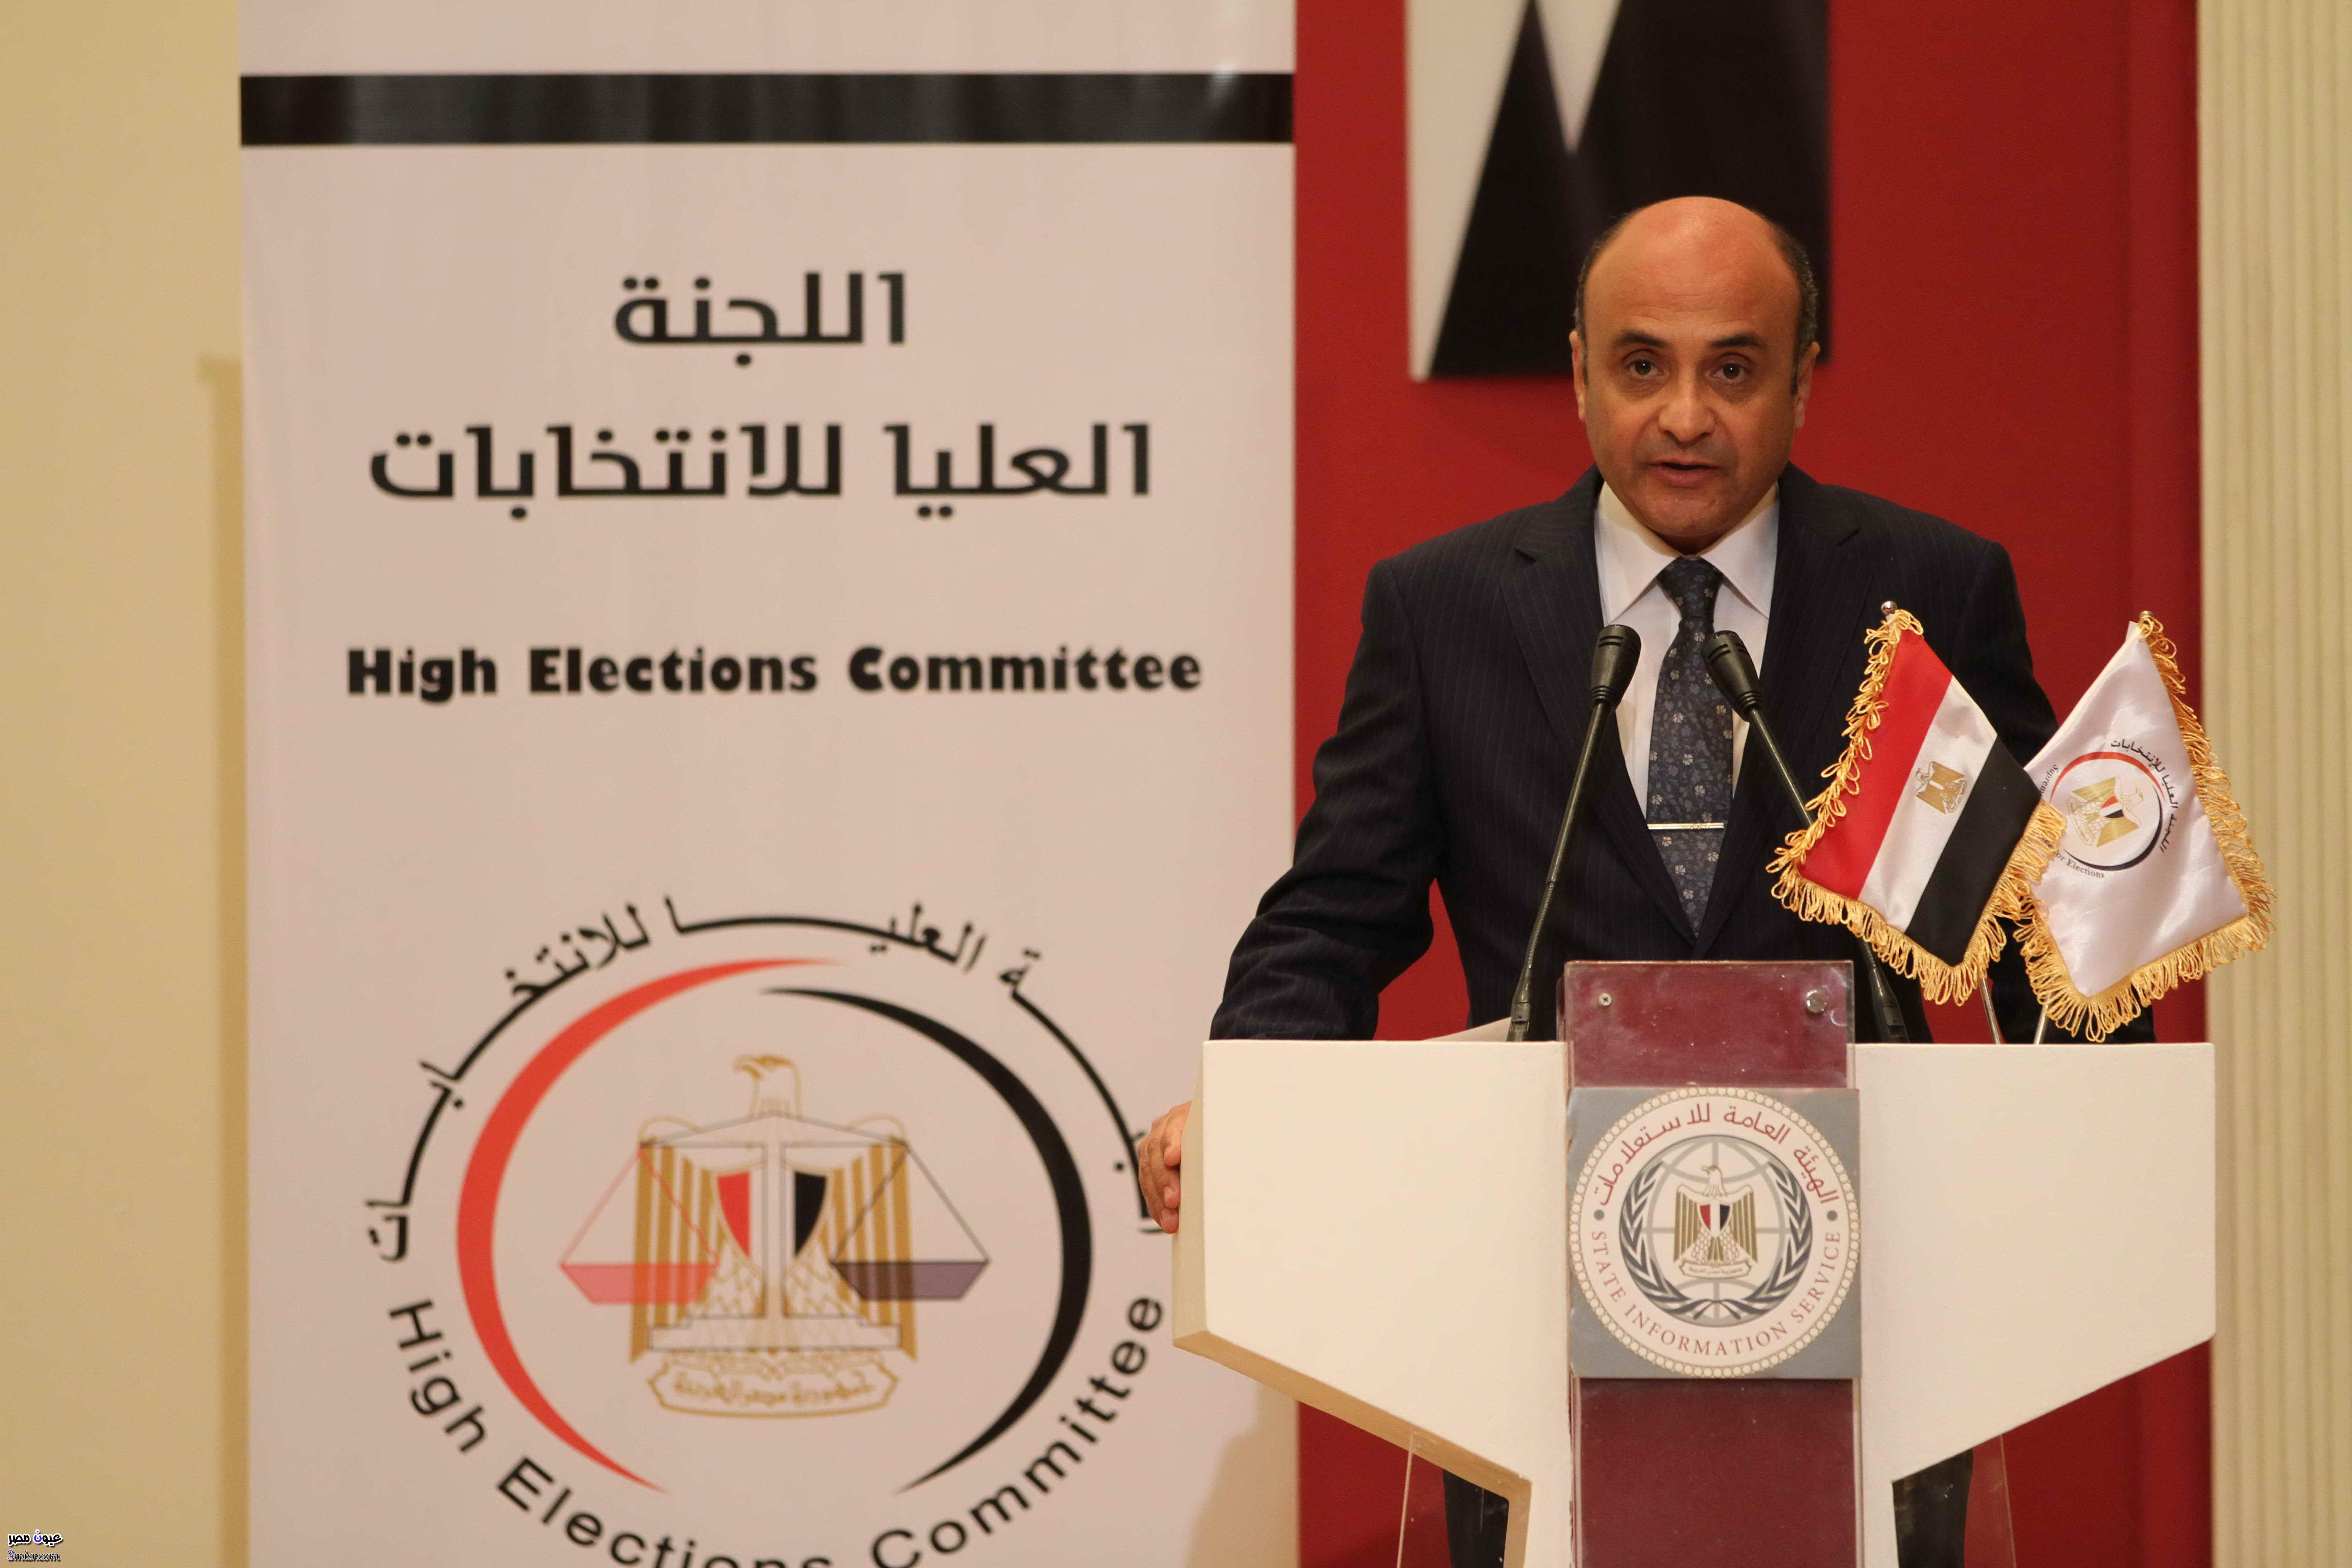 اللجنة العليا للانتخابات البرلمانية المرحلة الثانية 2015